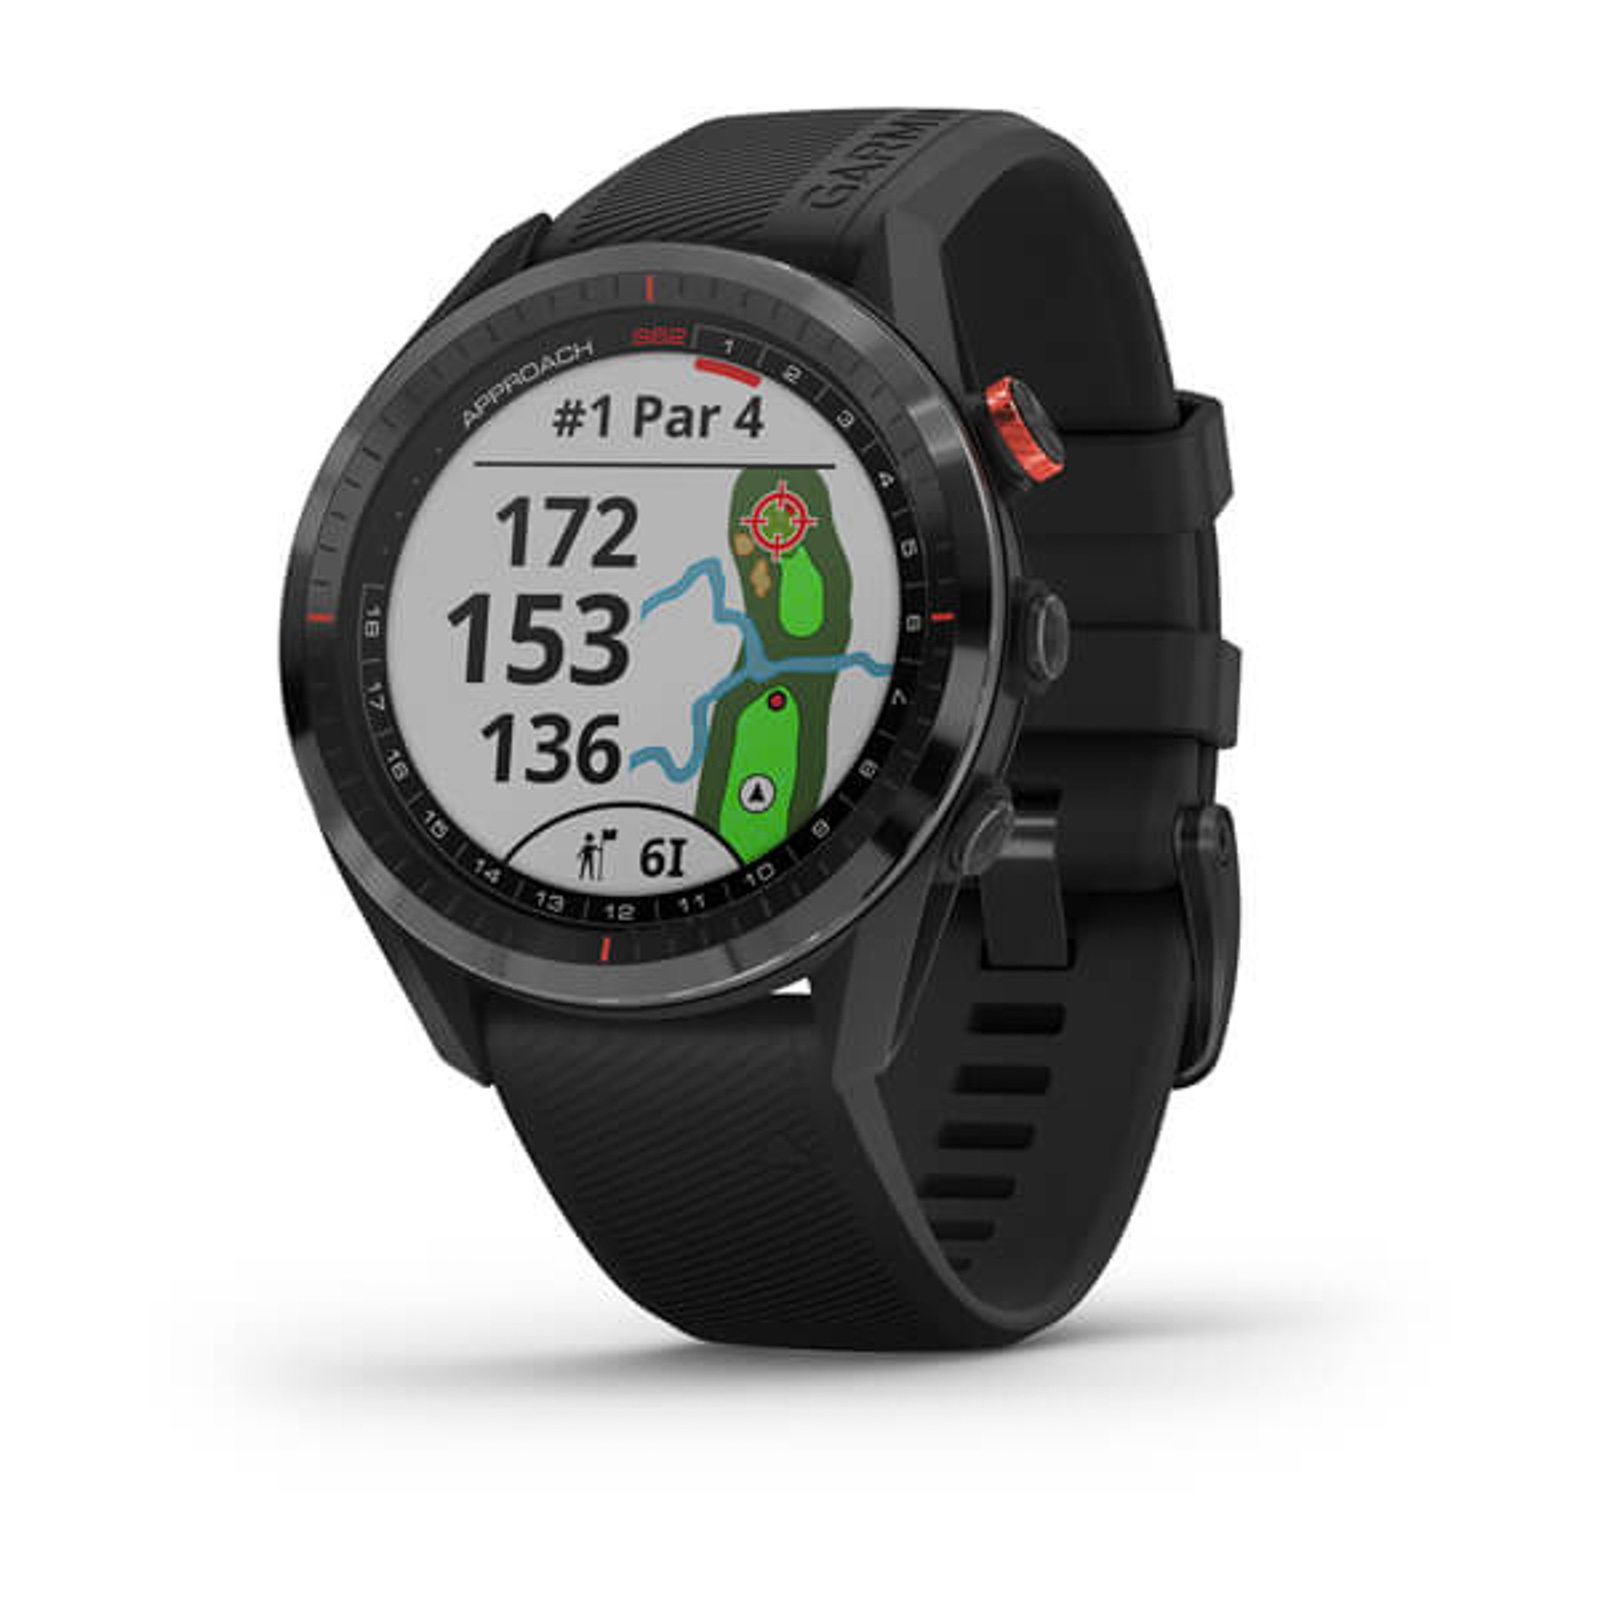 snorkel Leonardoda Chemie Garmin Approach S62 GPS Golf Watch Review: Is It Worth $500?